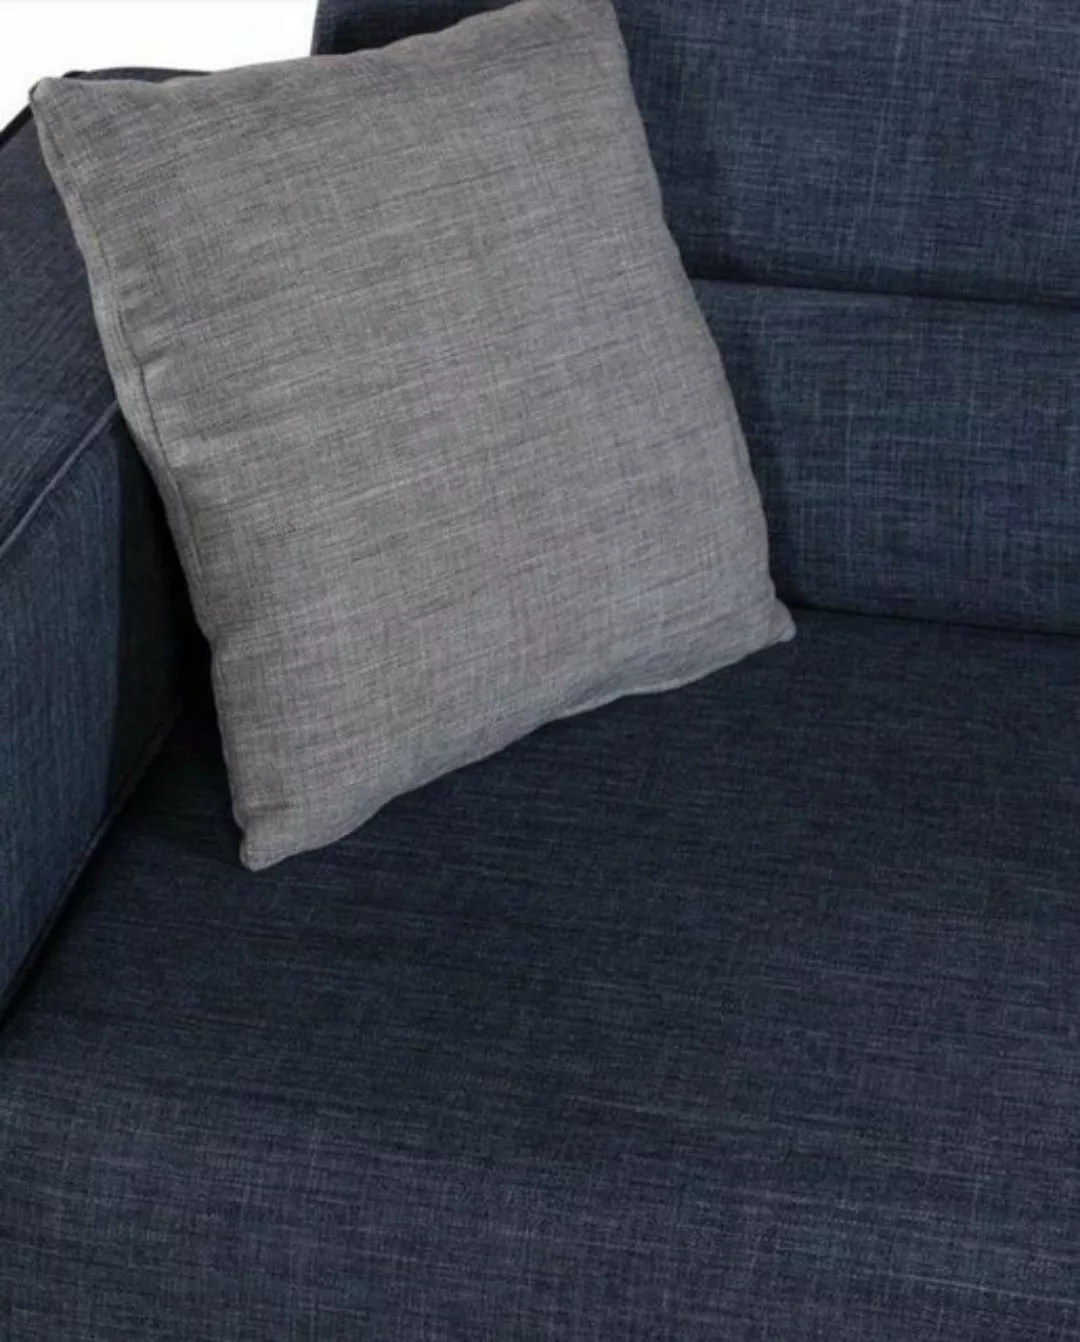 JVmoebel Sofa Dreisitzer Luxus Sofa 3 Sitzer Design Möbel Italienische Stil günstig online kaufen